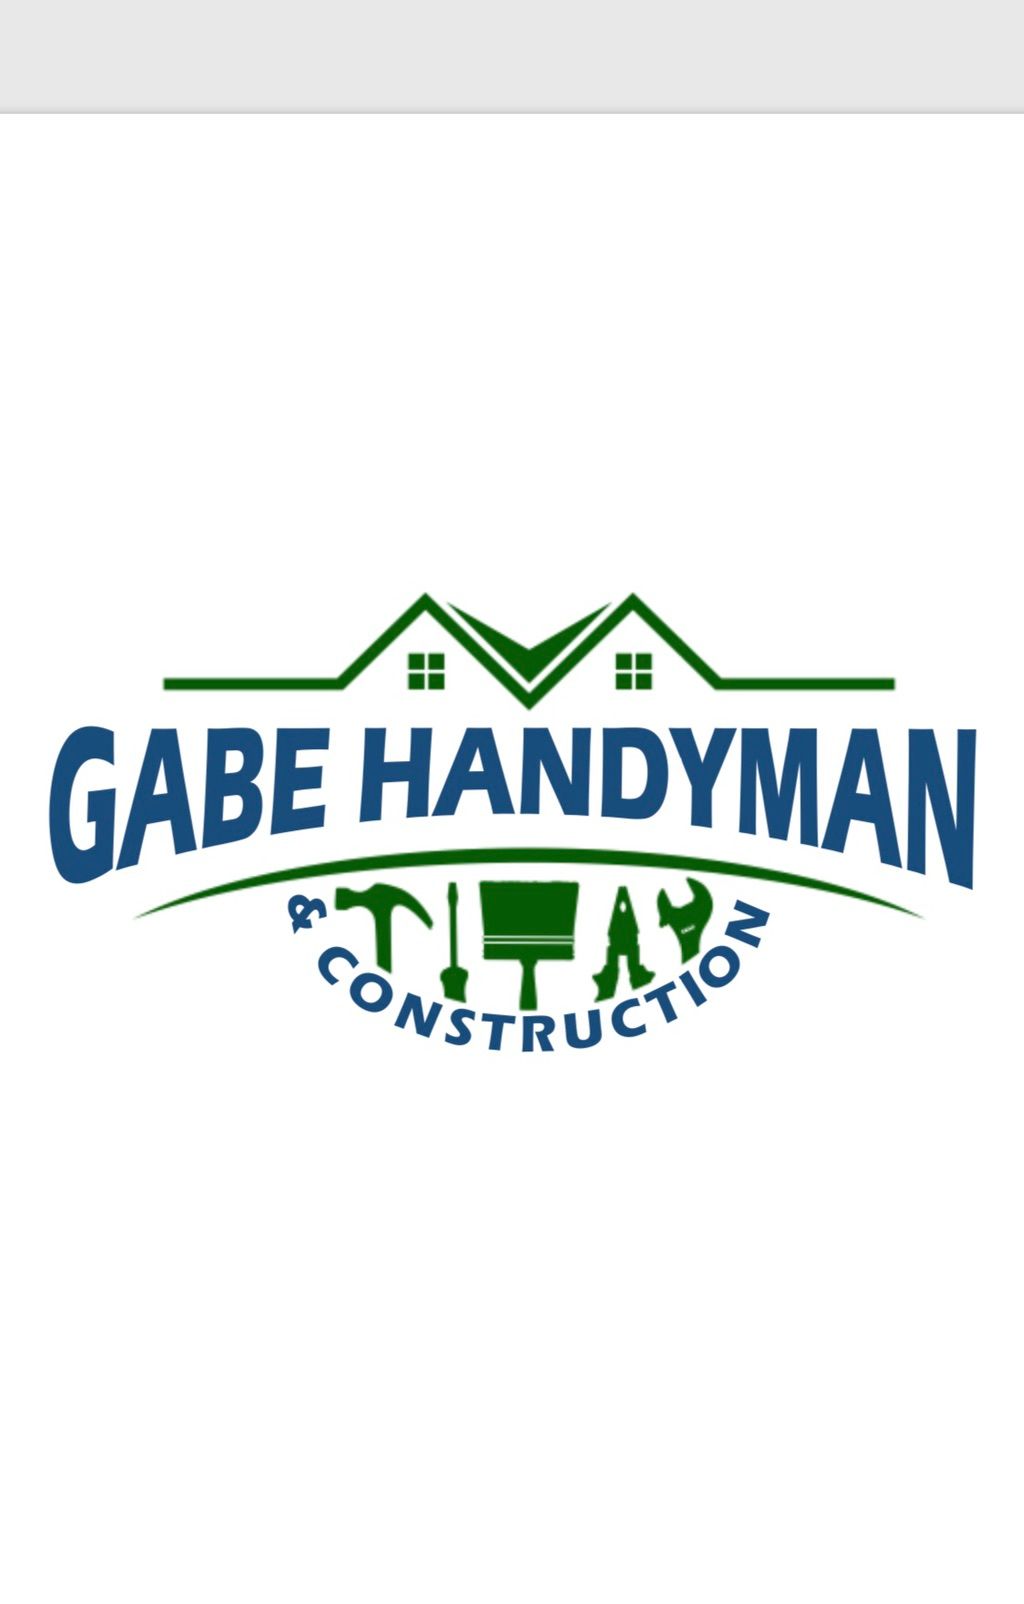 Gabe Handyman & Construction LLC.